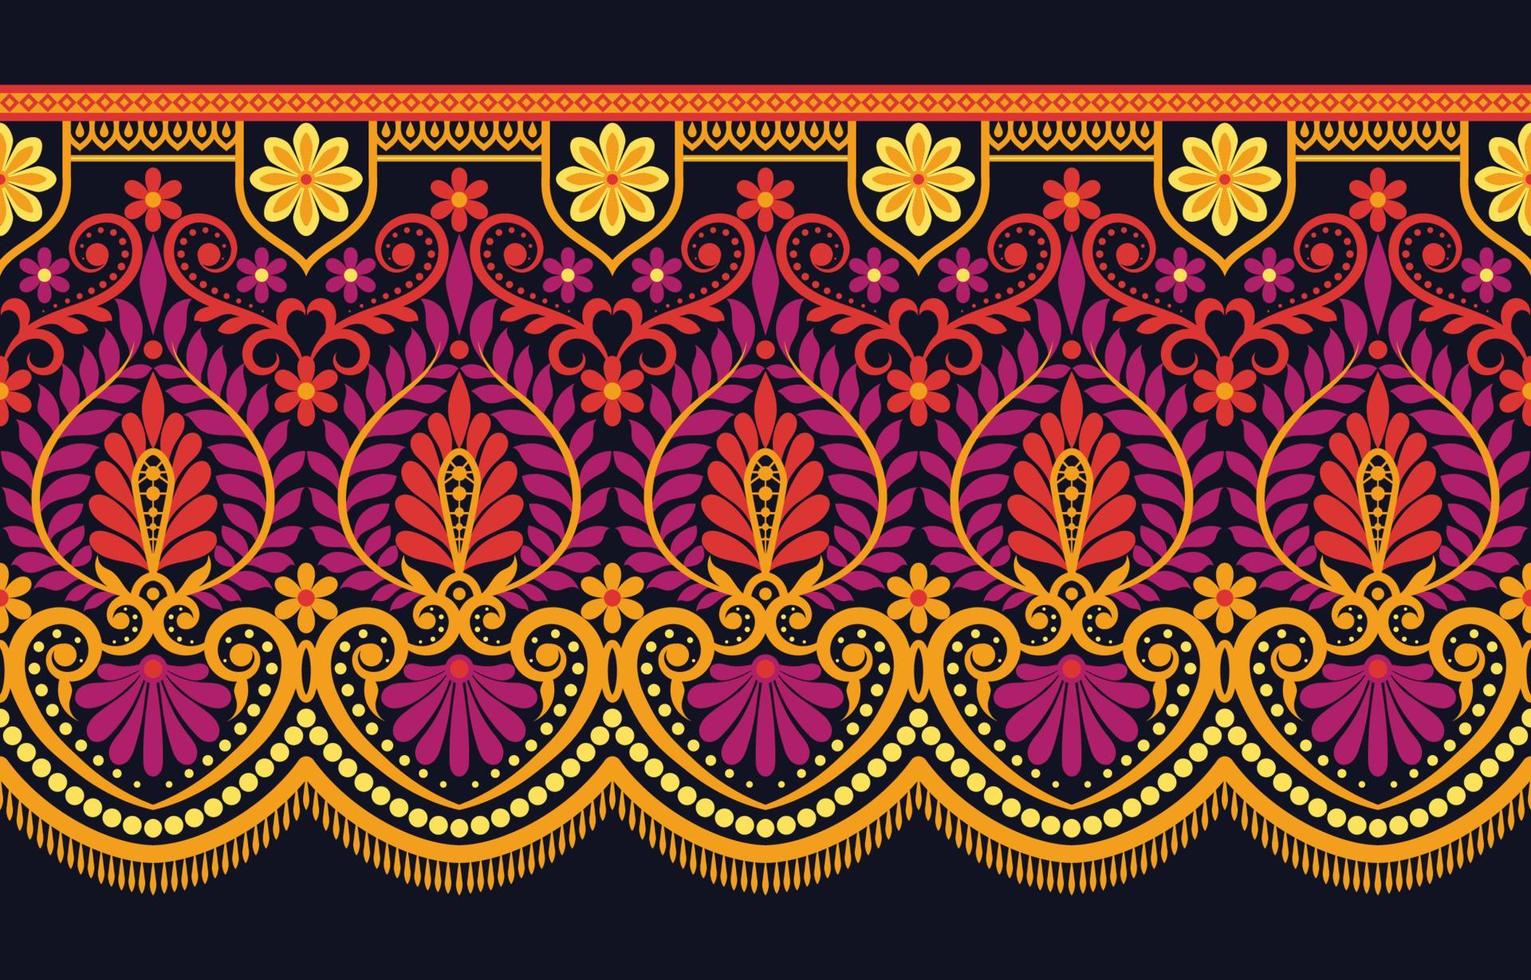 meetkundig etnisch patroon naadloos bloem kleur oosters. naadloos patroon. ontwerp voor kleding stof, gordijn, achtergrond, tapijt, behang, kleding, inpakken, batik, kleding stof vector illustratie.